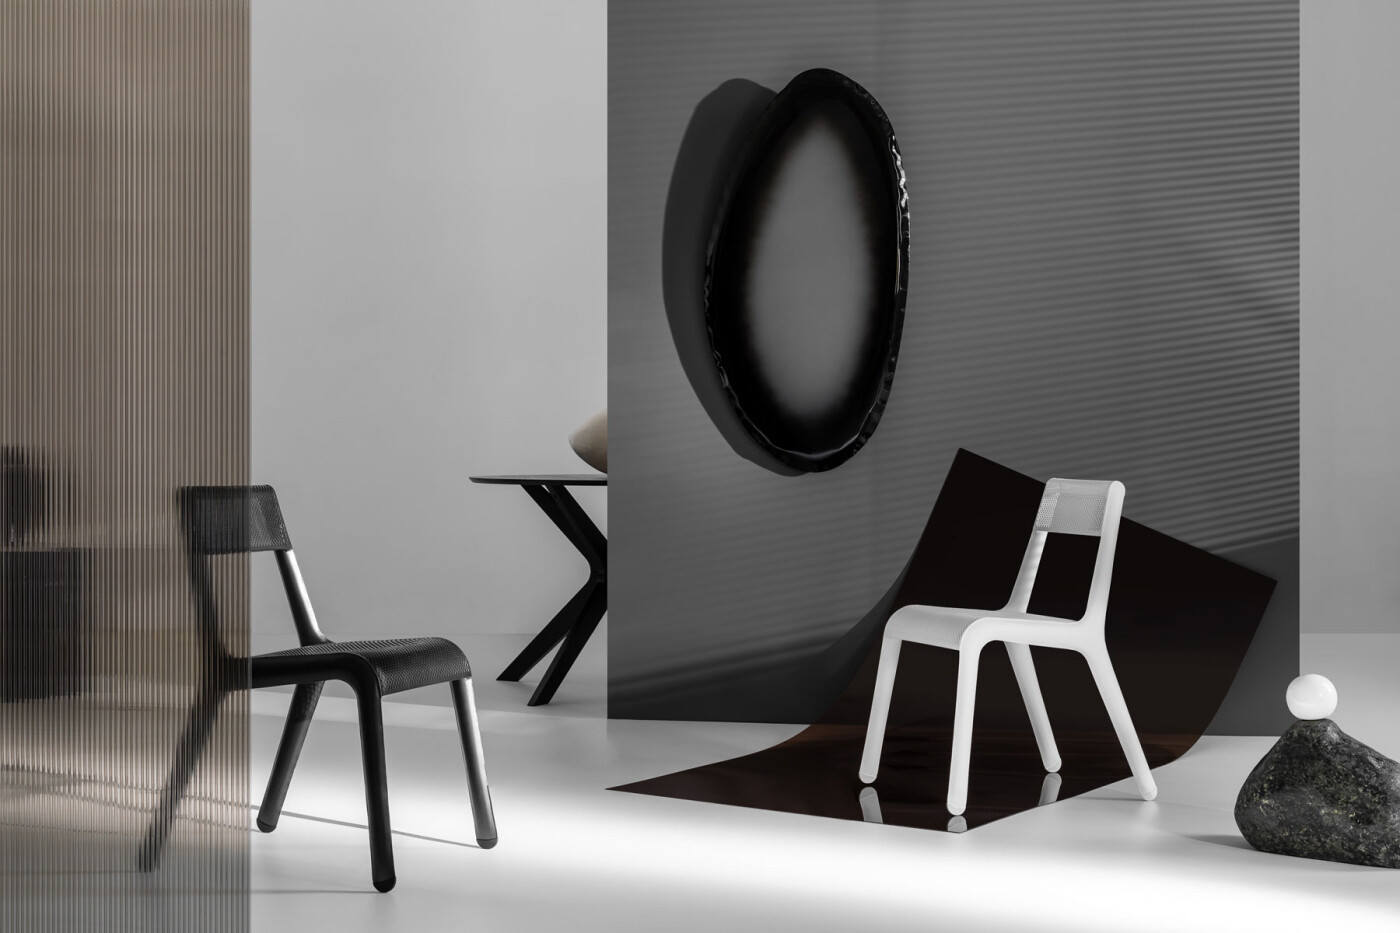 Ultraleggera Chair - Zieta Studio